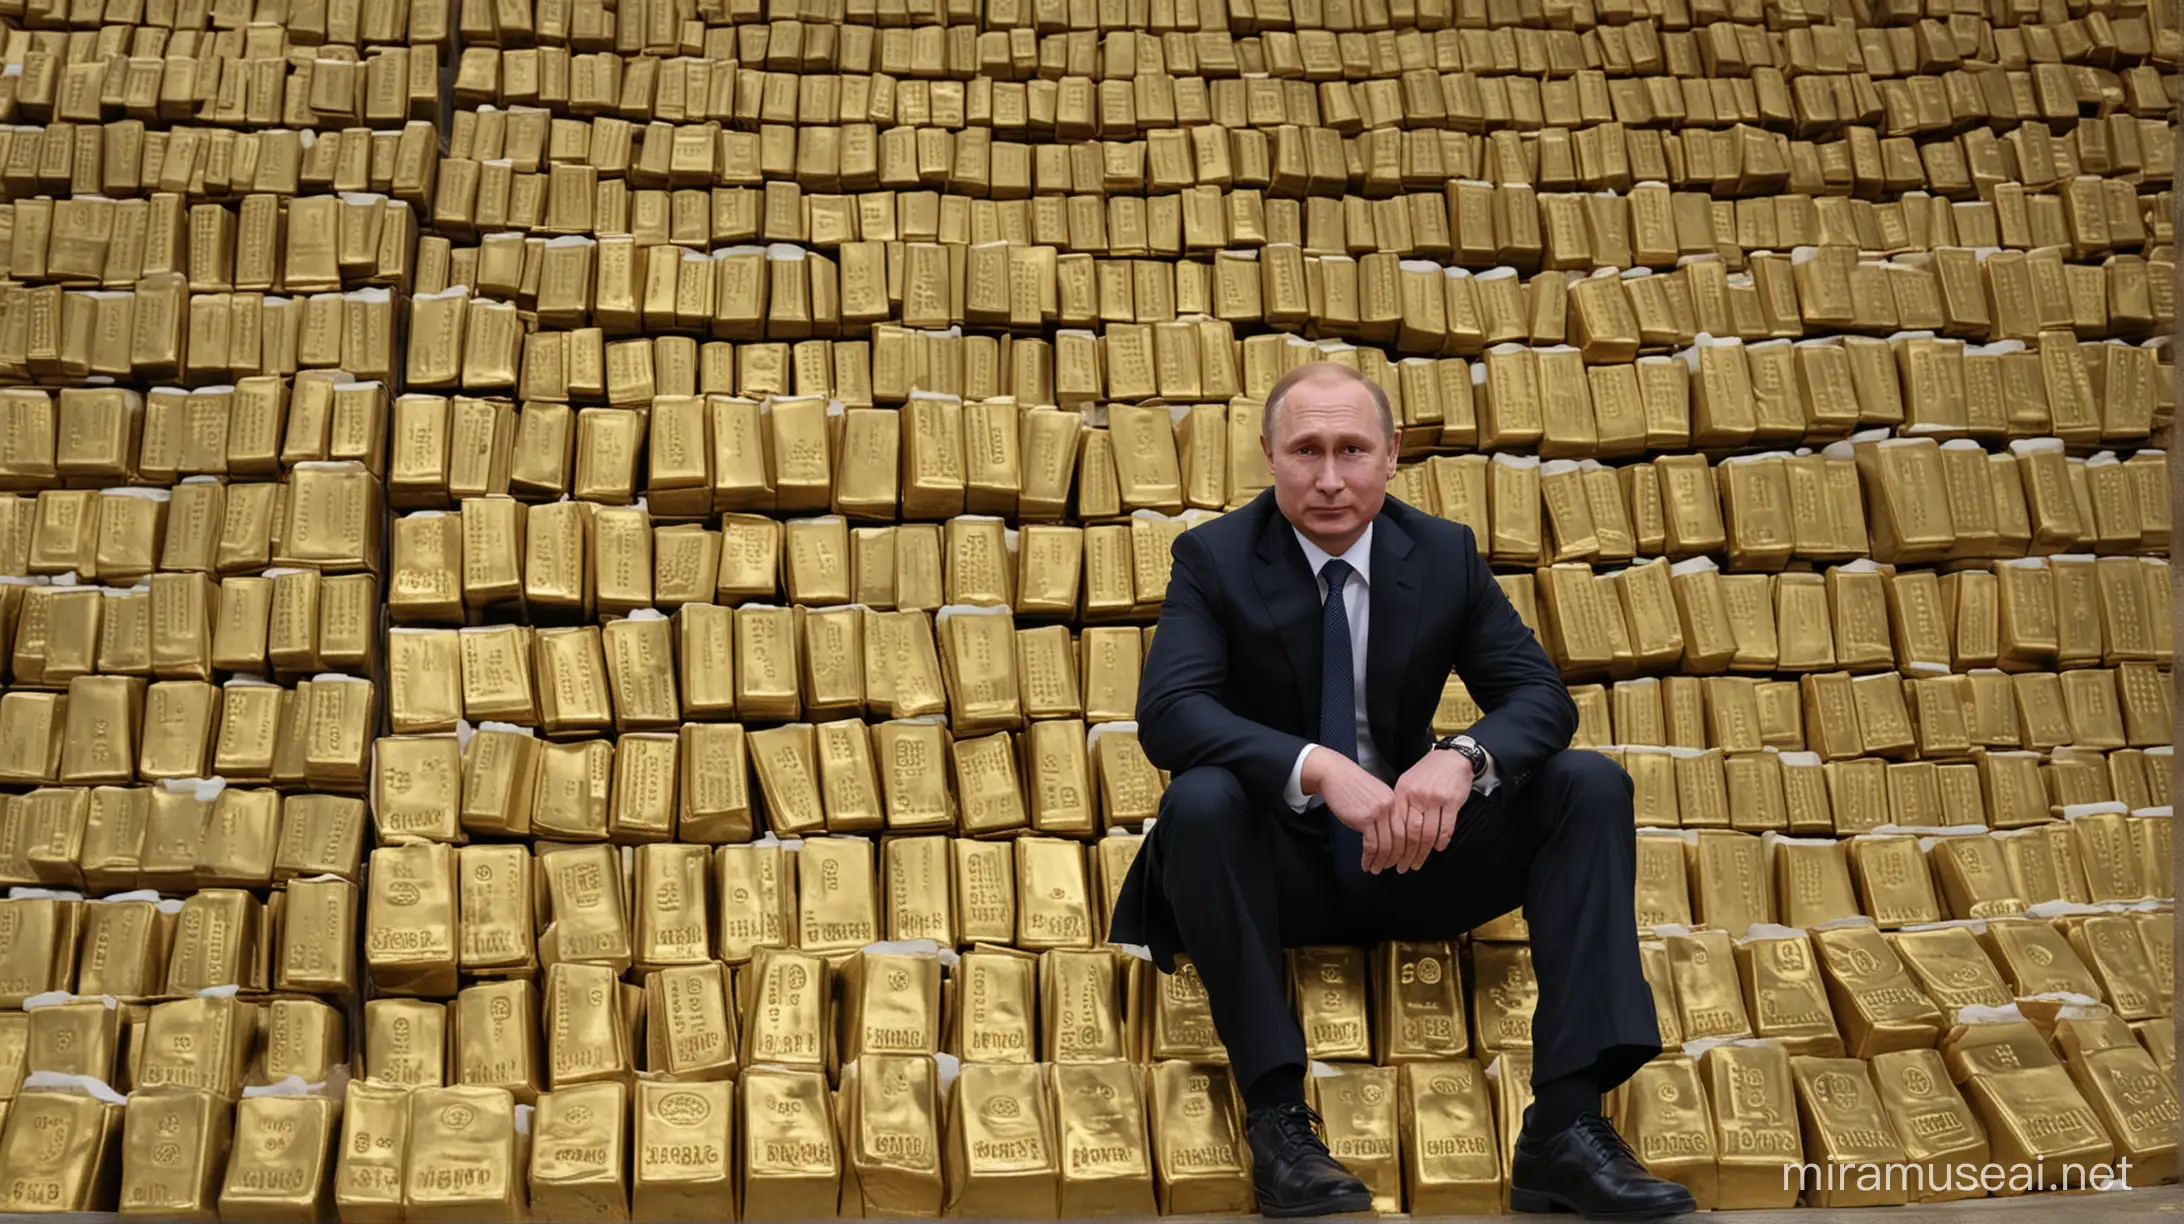 Vladimir Putin sitting on gold bars